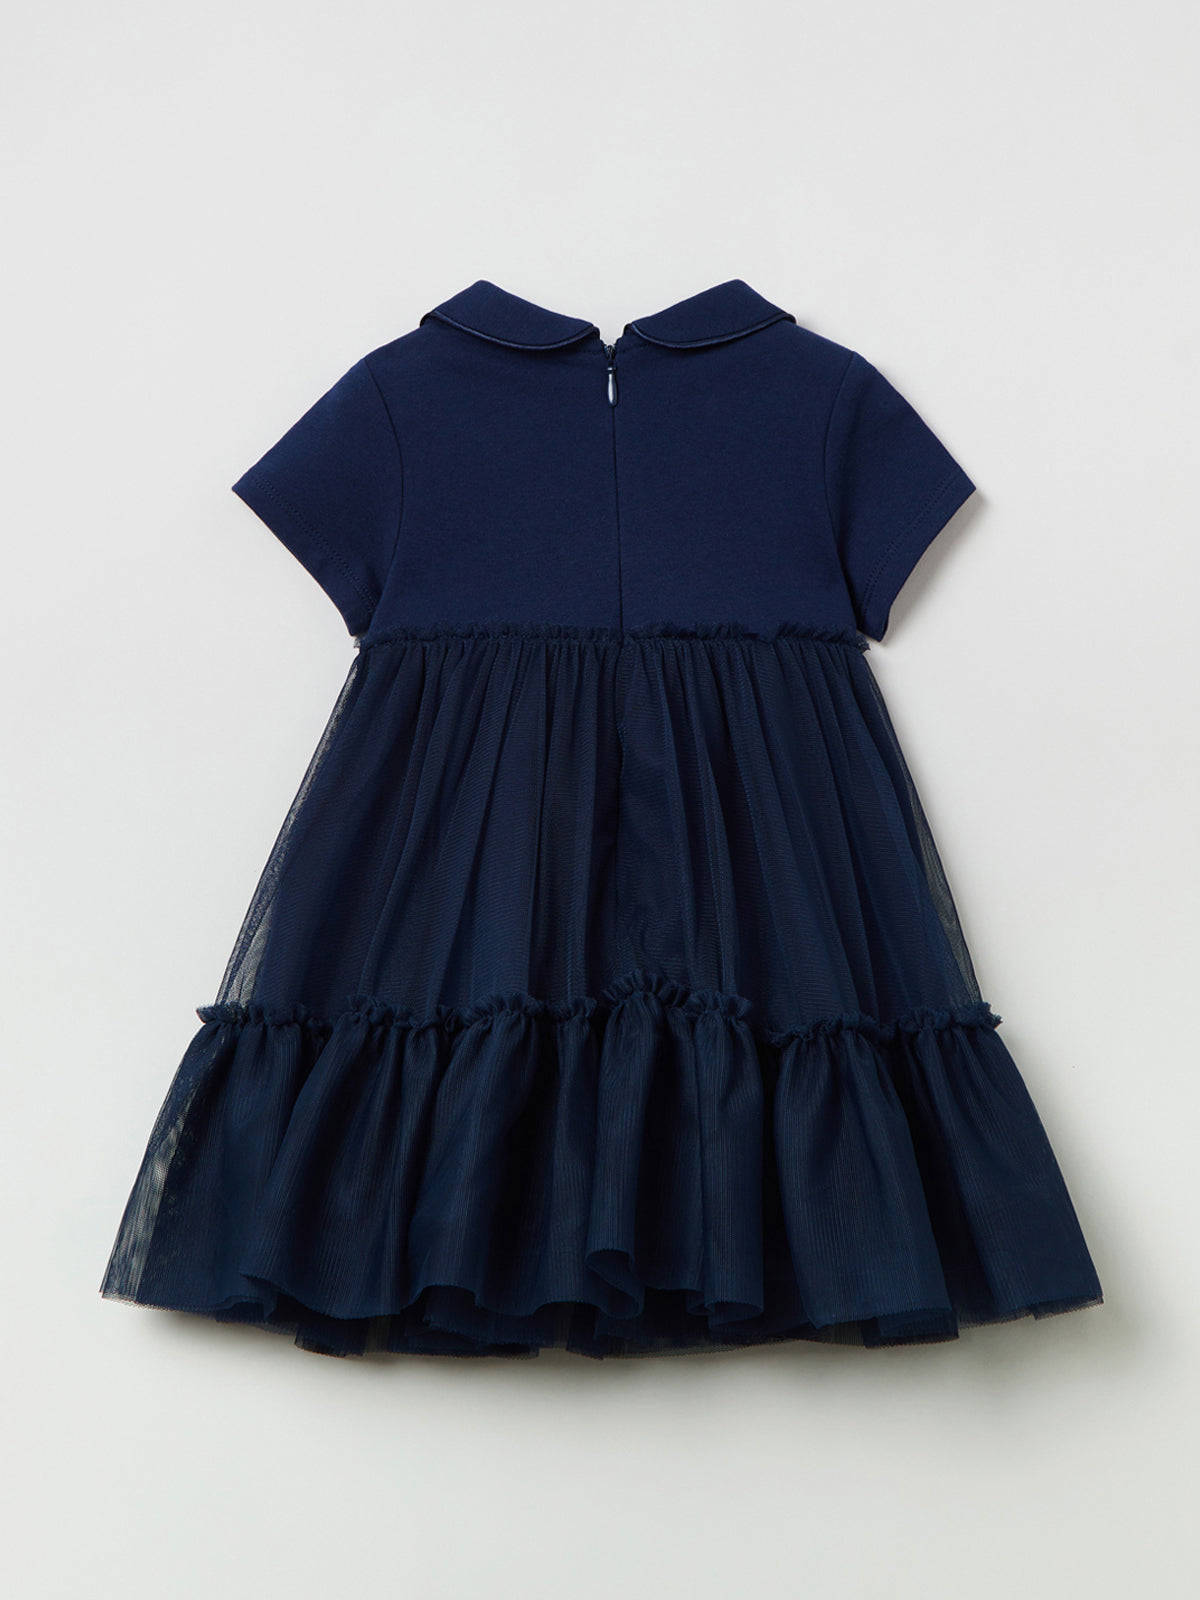 שמלת פרנץ' טרי בשילוב טול / תינוקות